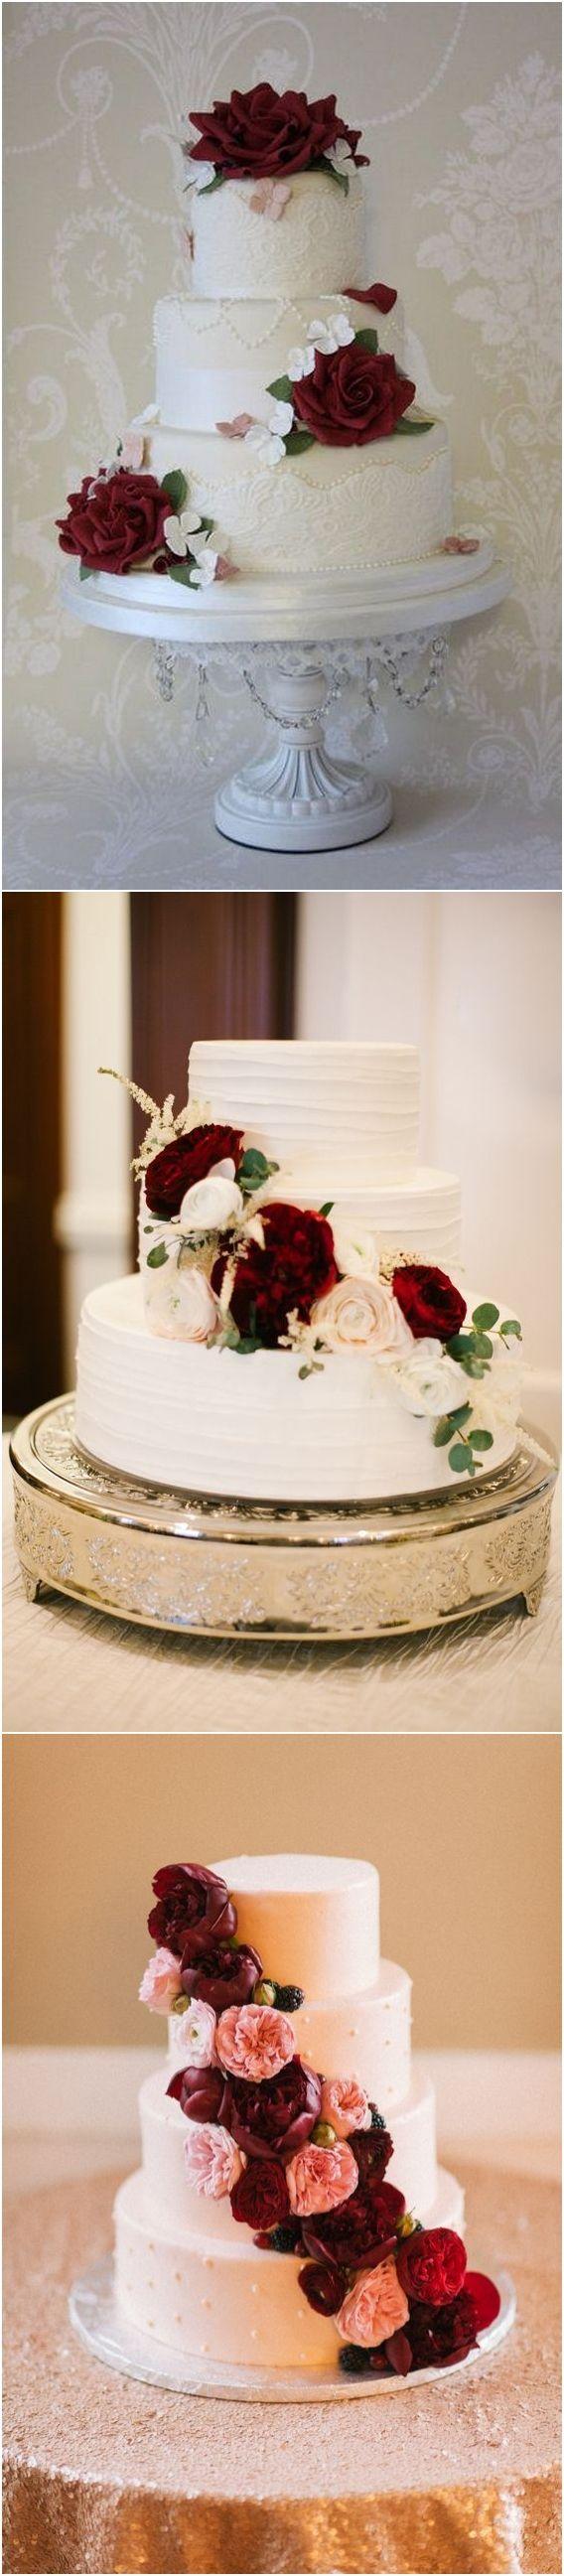 Свадьба - Top 20 Burgundy Wedding Cakes You’ll Love